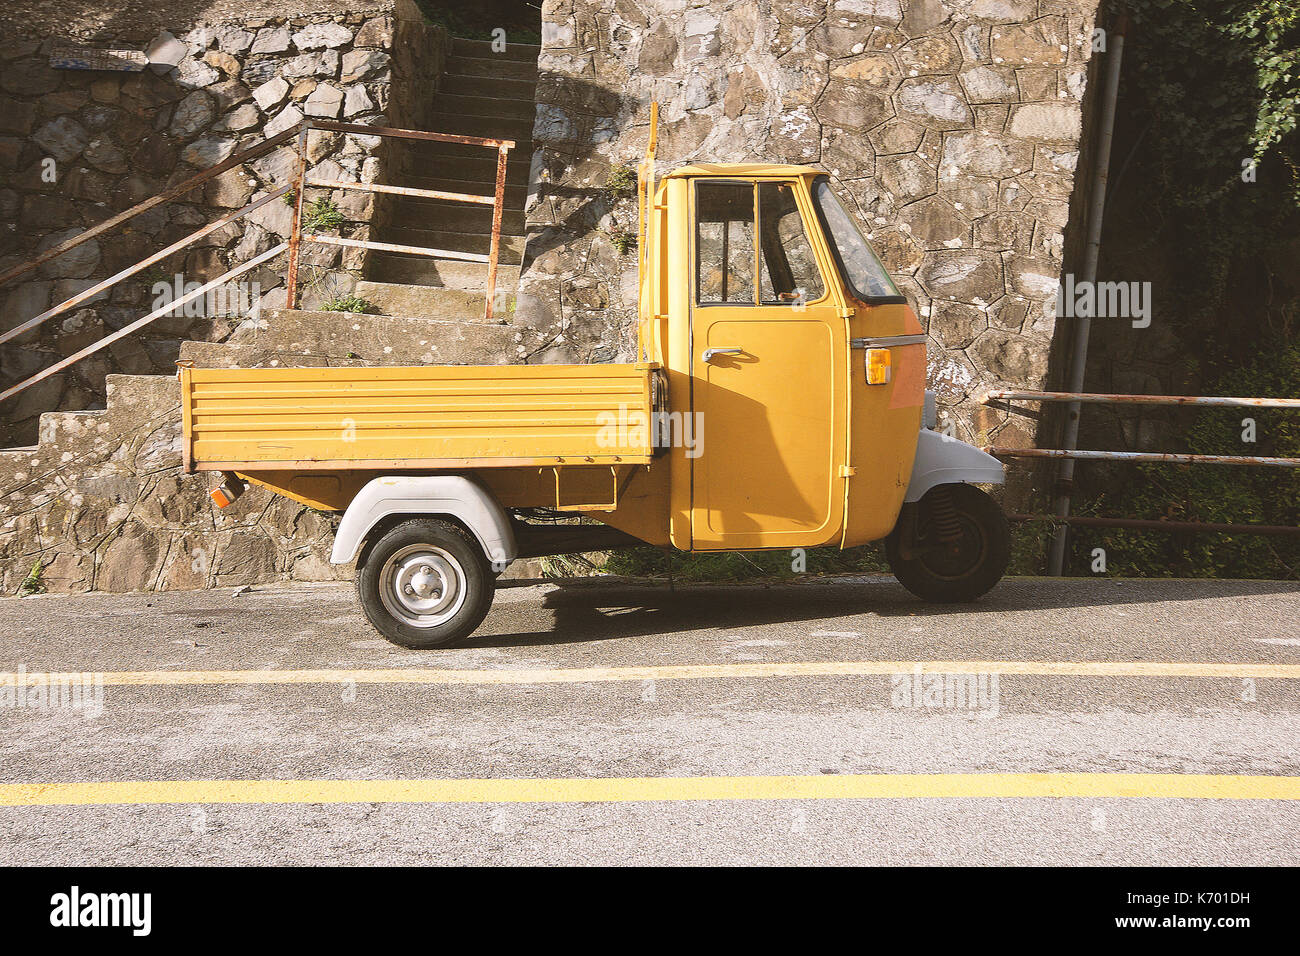 Une voiture jaune "ape" dans la 5 terre, ligurie, italie Banque D'Images